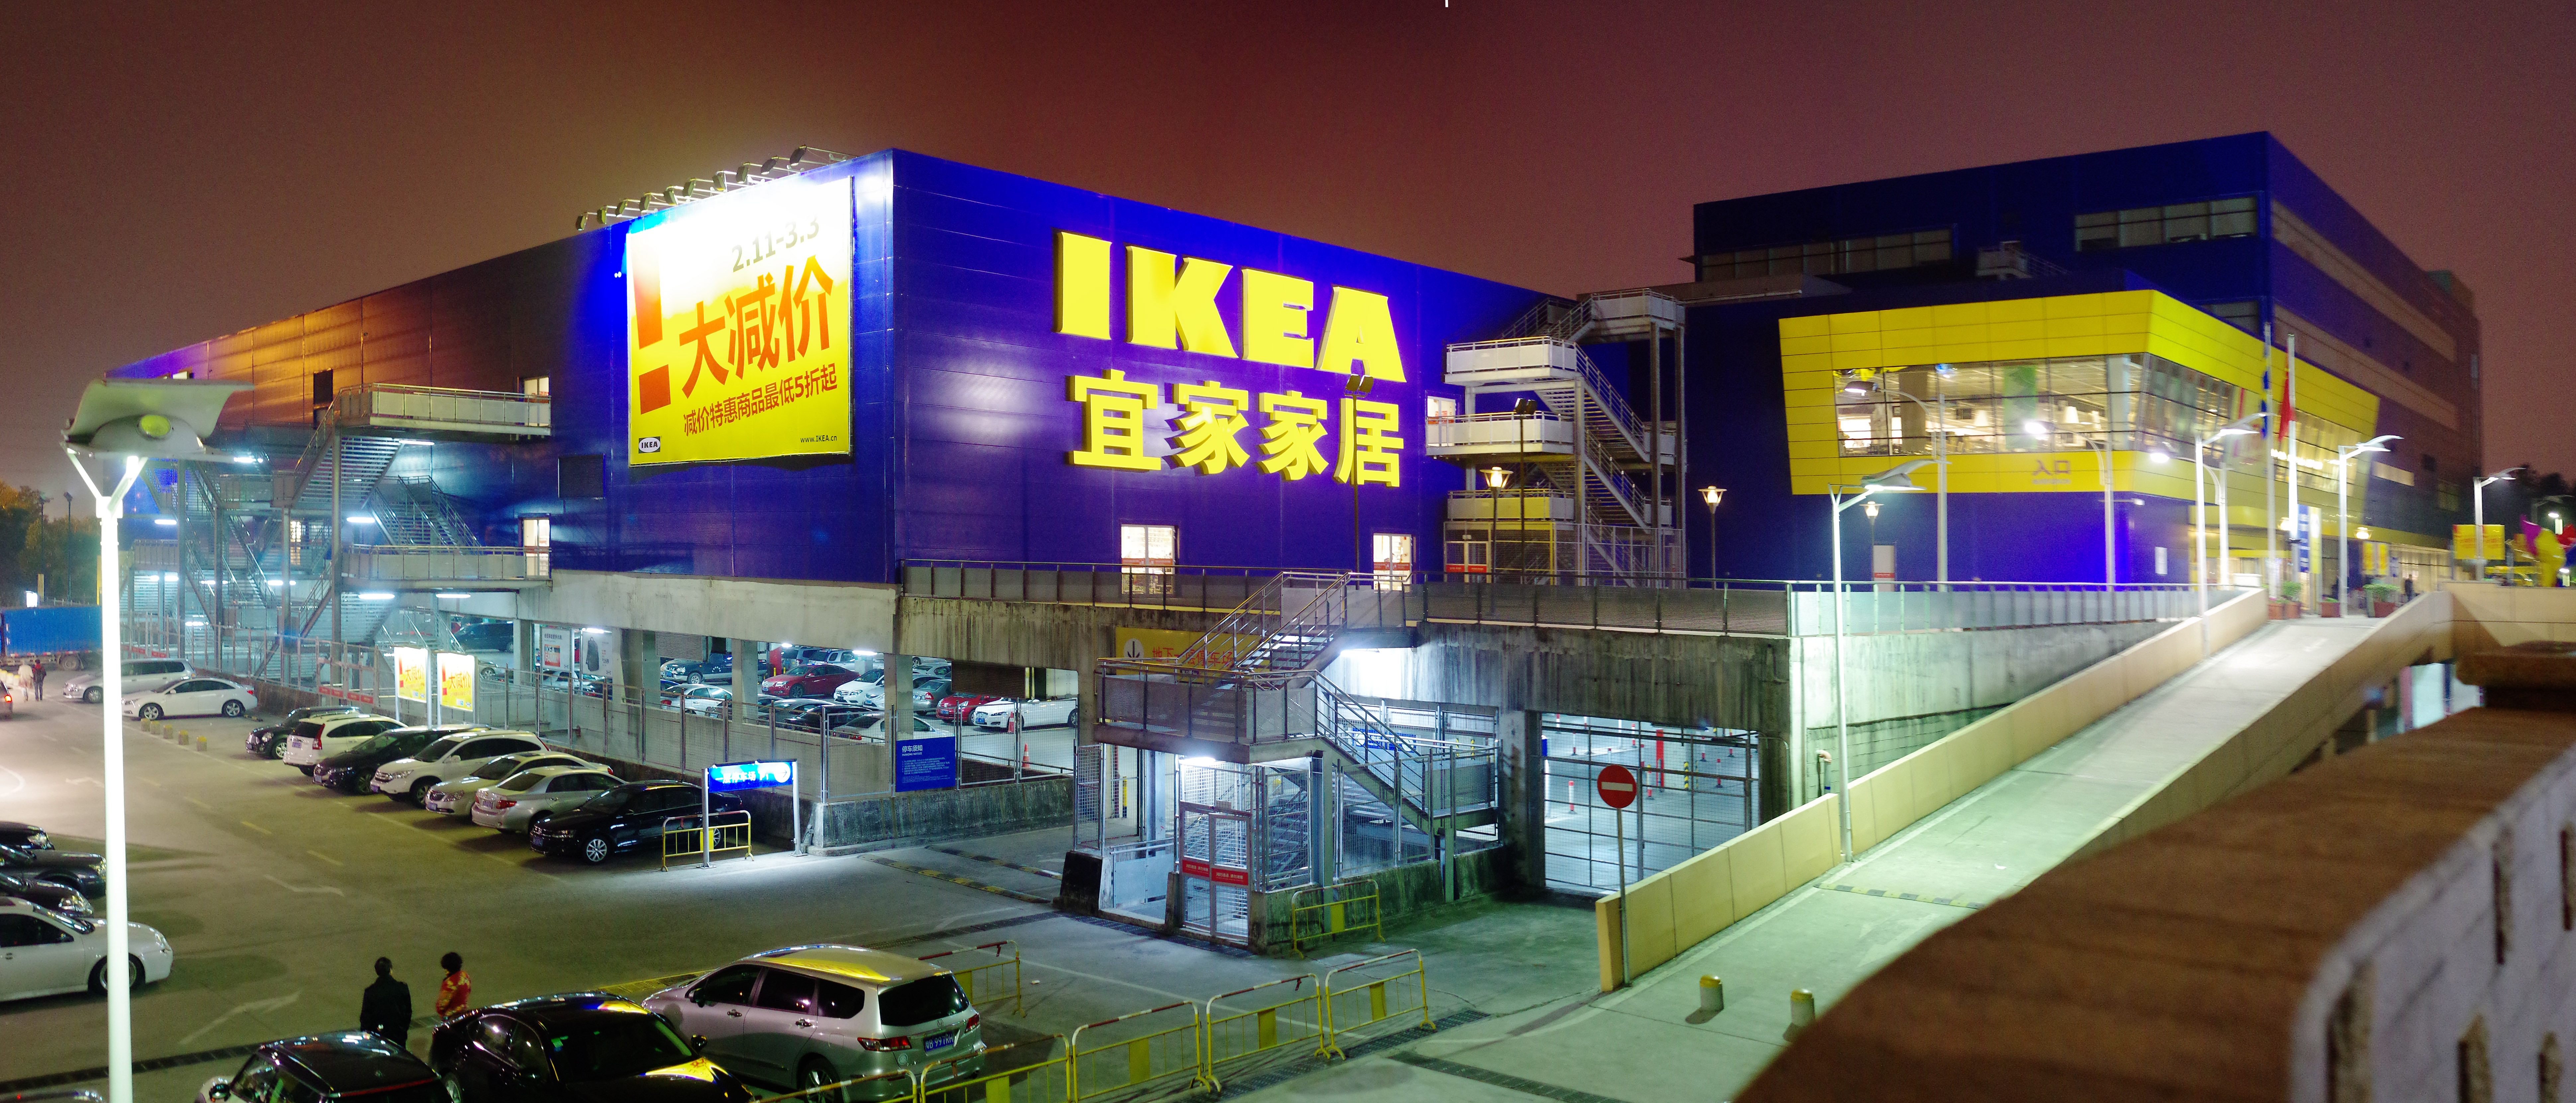 Hivatalos közleményben magyarázza el a magyar IKEA, hogy mostantól miért nem lehet elvitelre kérni a húsgolyót